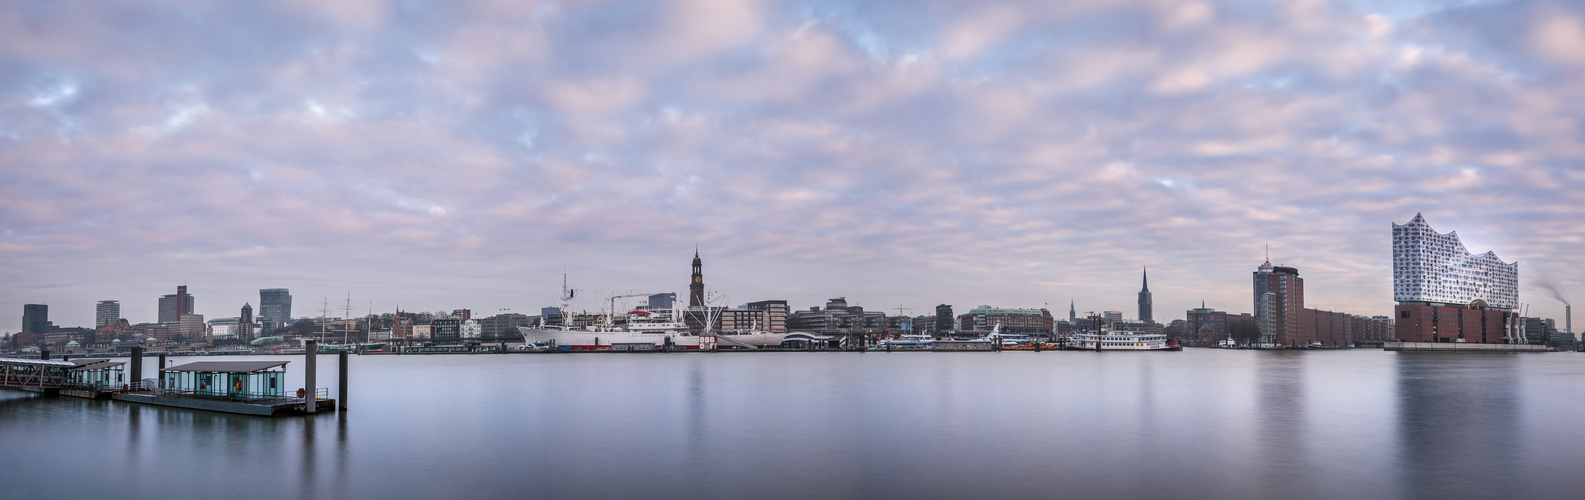 Hamburg Panorama mit Elbphie